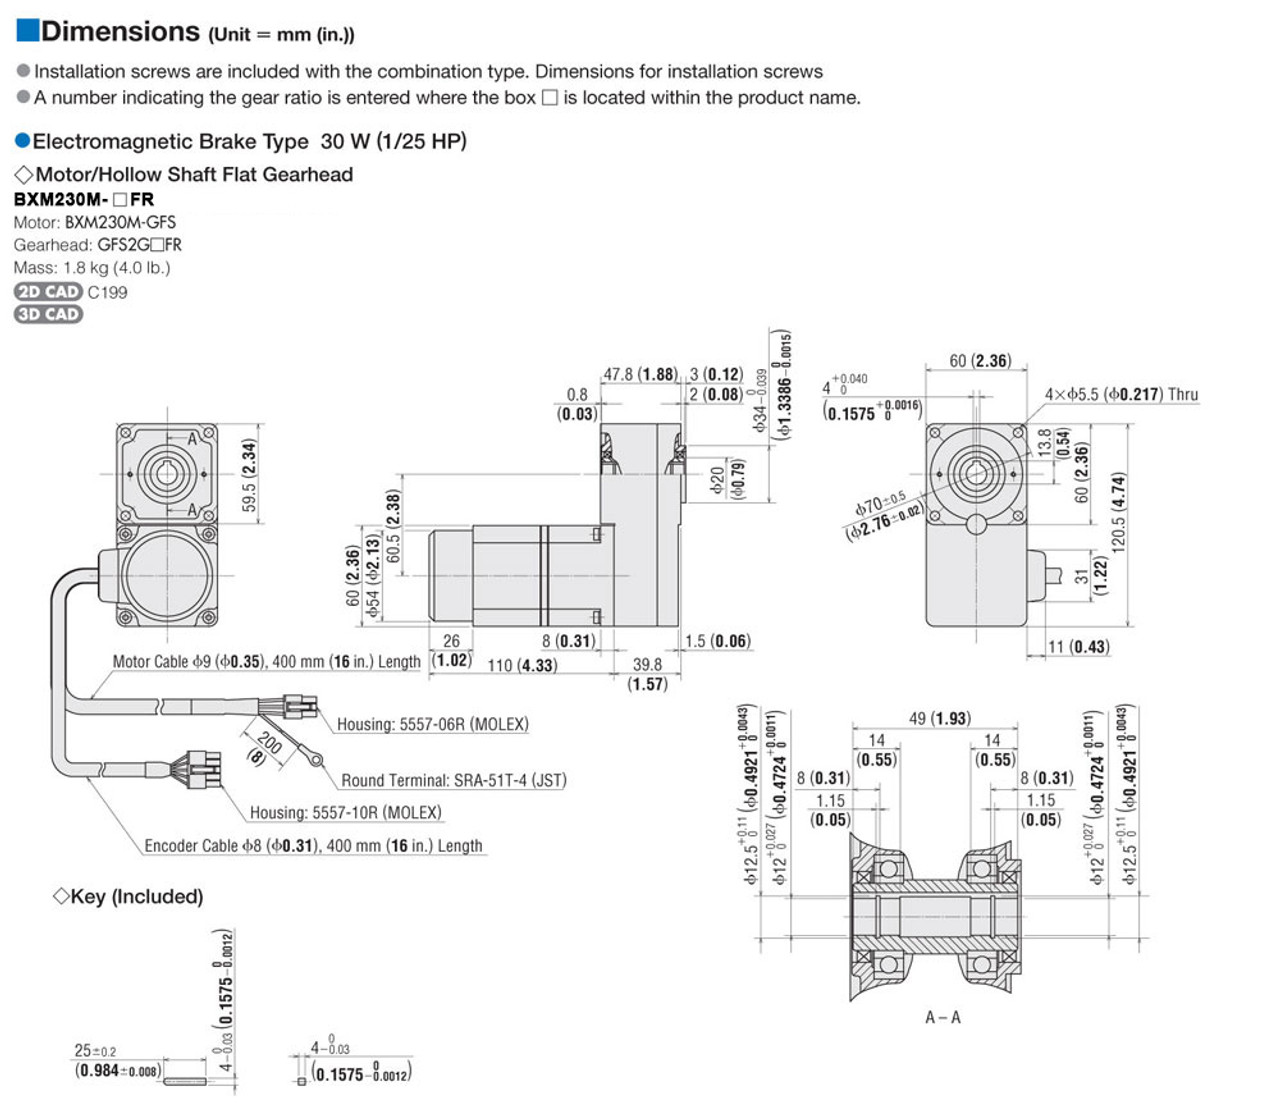 BXM230M-50FR / BXSD30-C2 - Dimensions